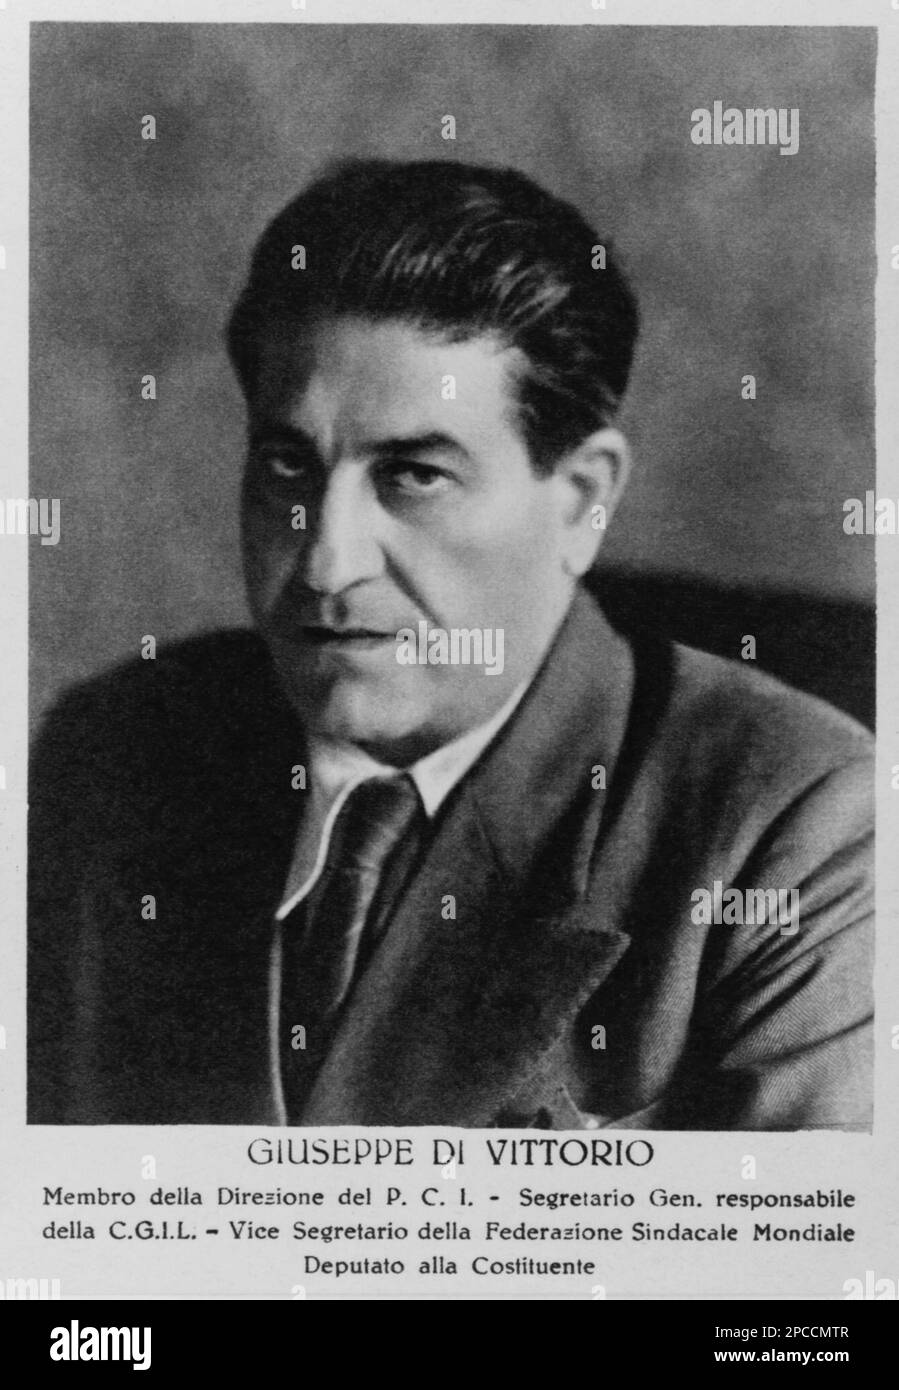 1949, Roma , Italien : der kommunistische italienische Politiker GIUSEPPE DI VITTORIO ( 1892 - 1957 ) - PCI - P.C.I. - PARTITO COMUNISTA ITALIANO - COMUNISMO - LIBERAZIONE - RESISTENZA - PORTRAIT - RITRATTO - POLITICA - POLITICA - ITALIA - POLITIC - ITALIEN --- ARCHIVIO GBB Stockfoto